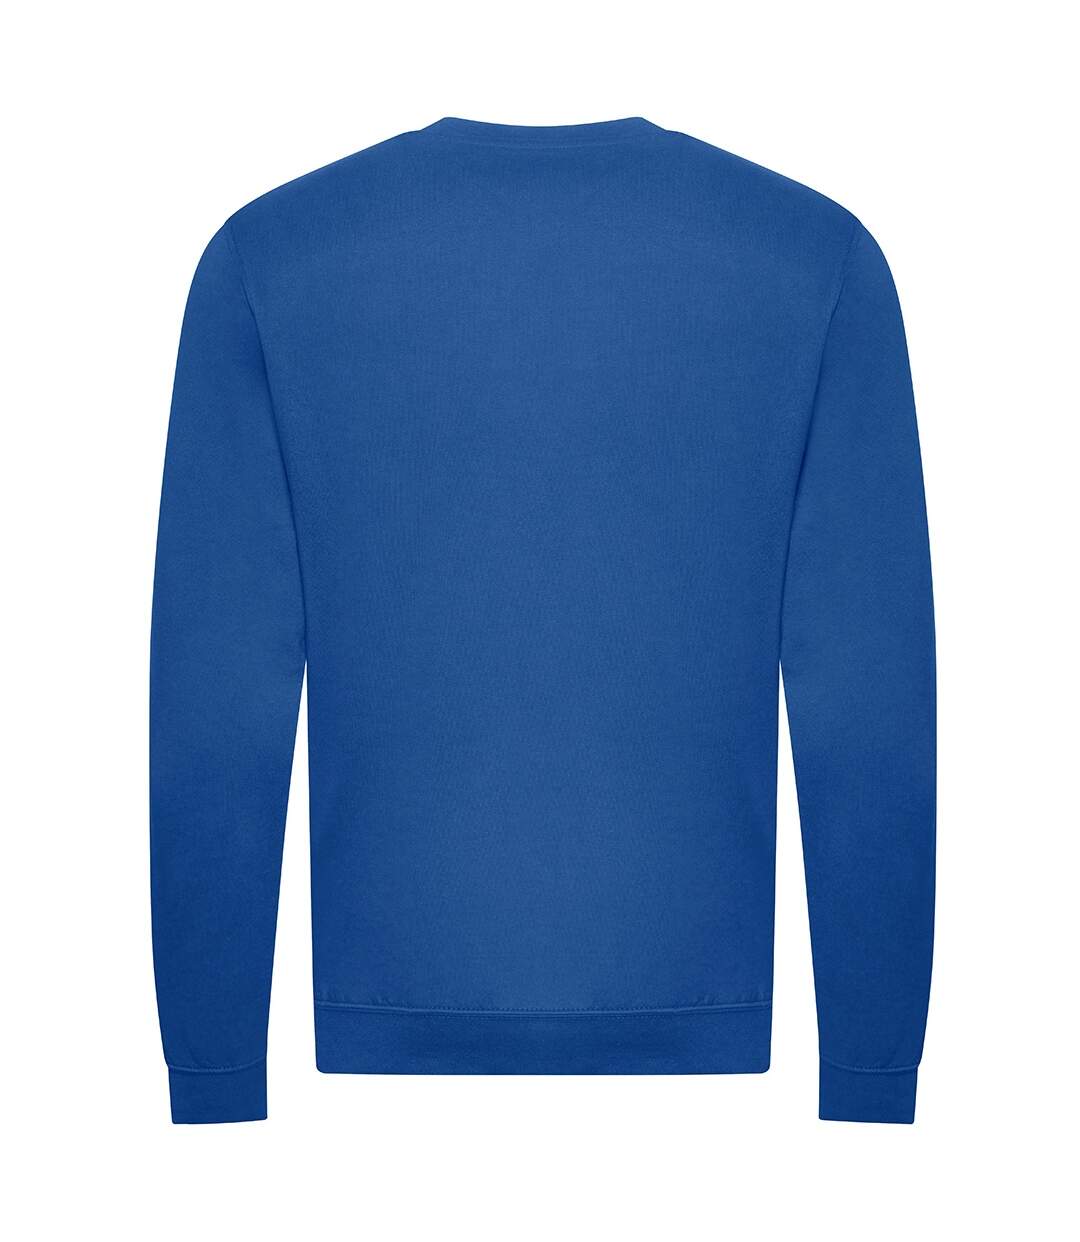 Awdis Mens Organic Sweatshirt (Royal Blue) - UTPC4333